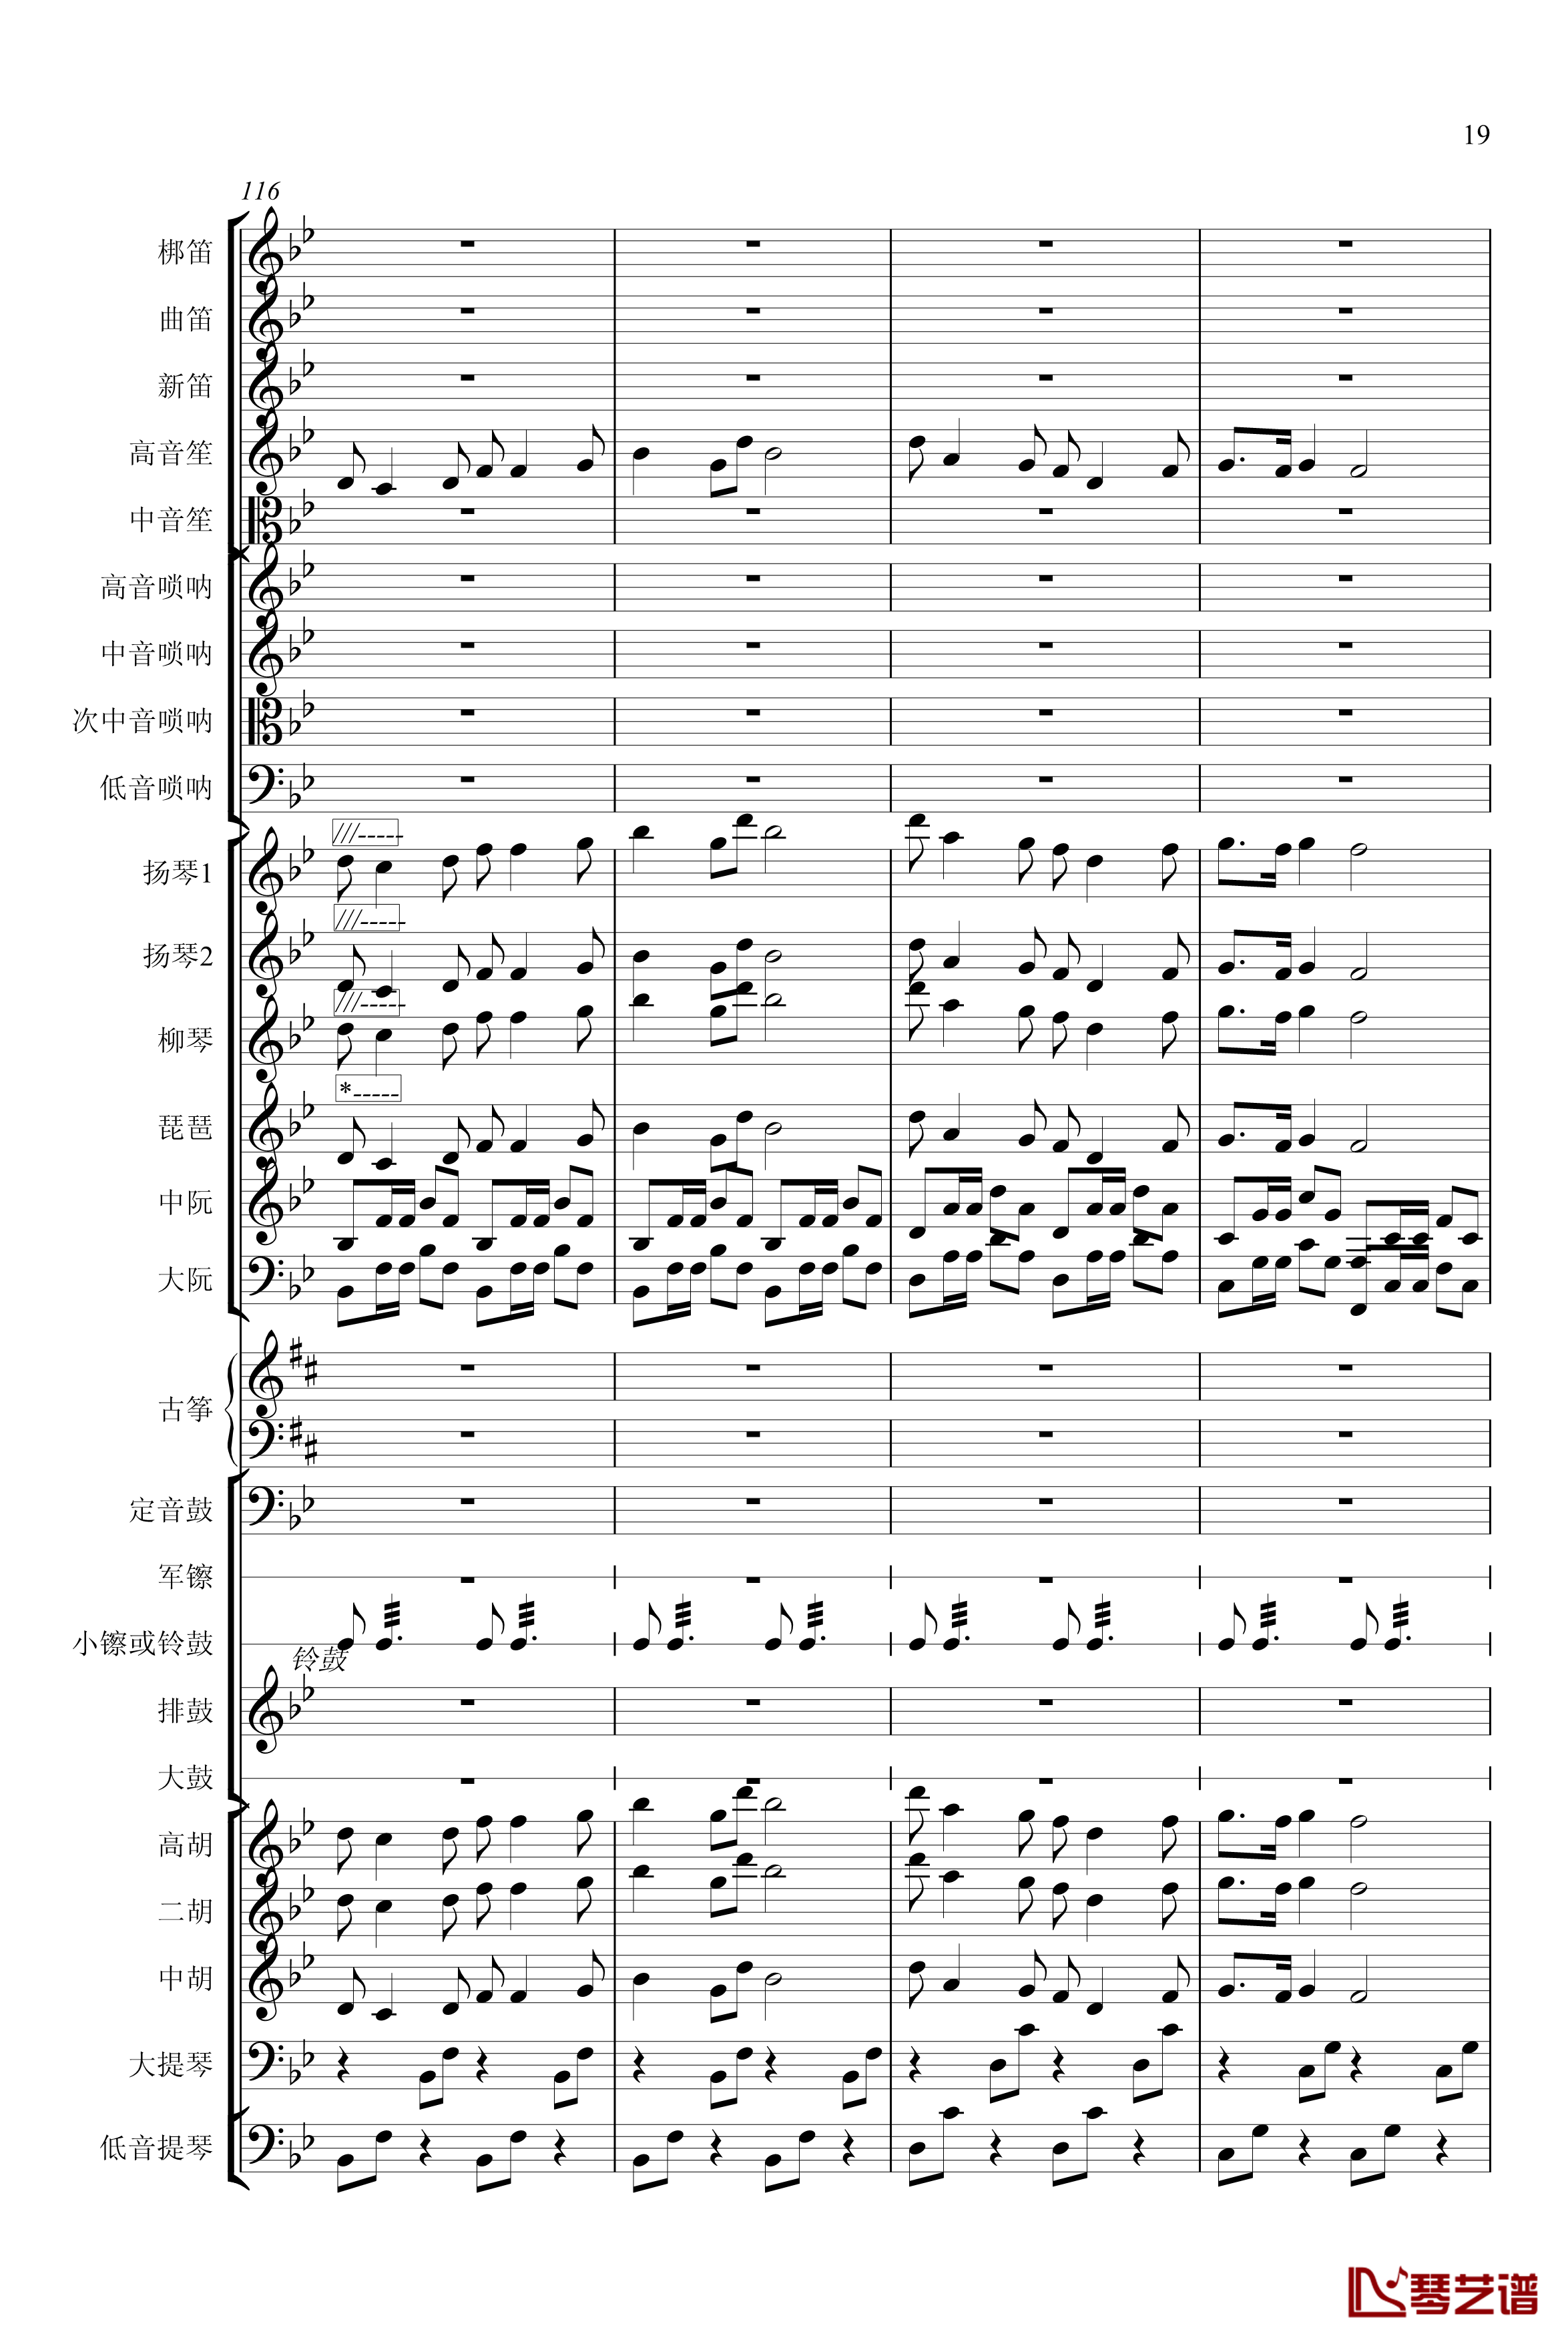 春节序曲钢琴谱-专业总谱-中国名曲19